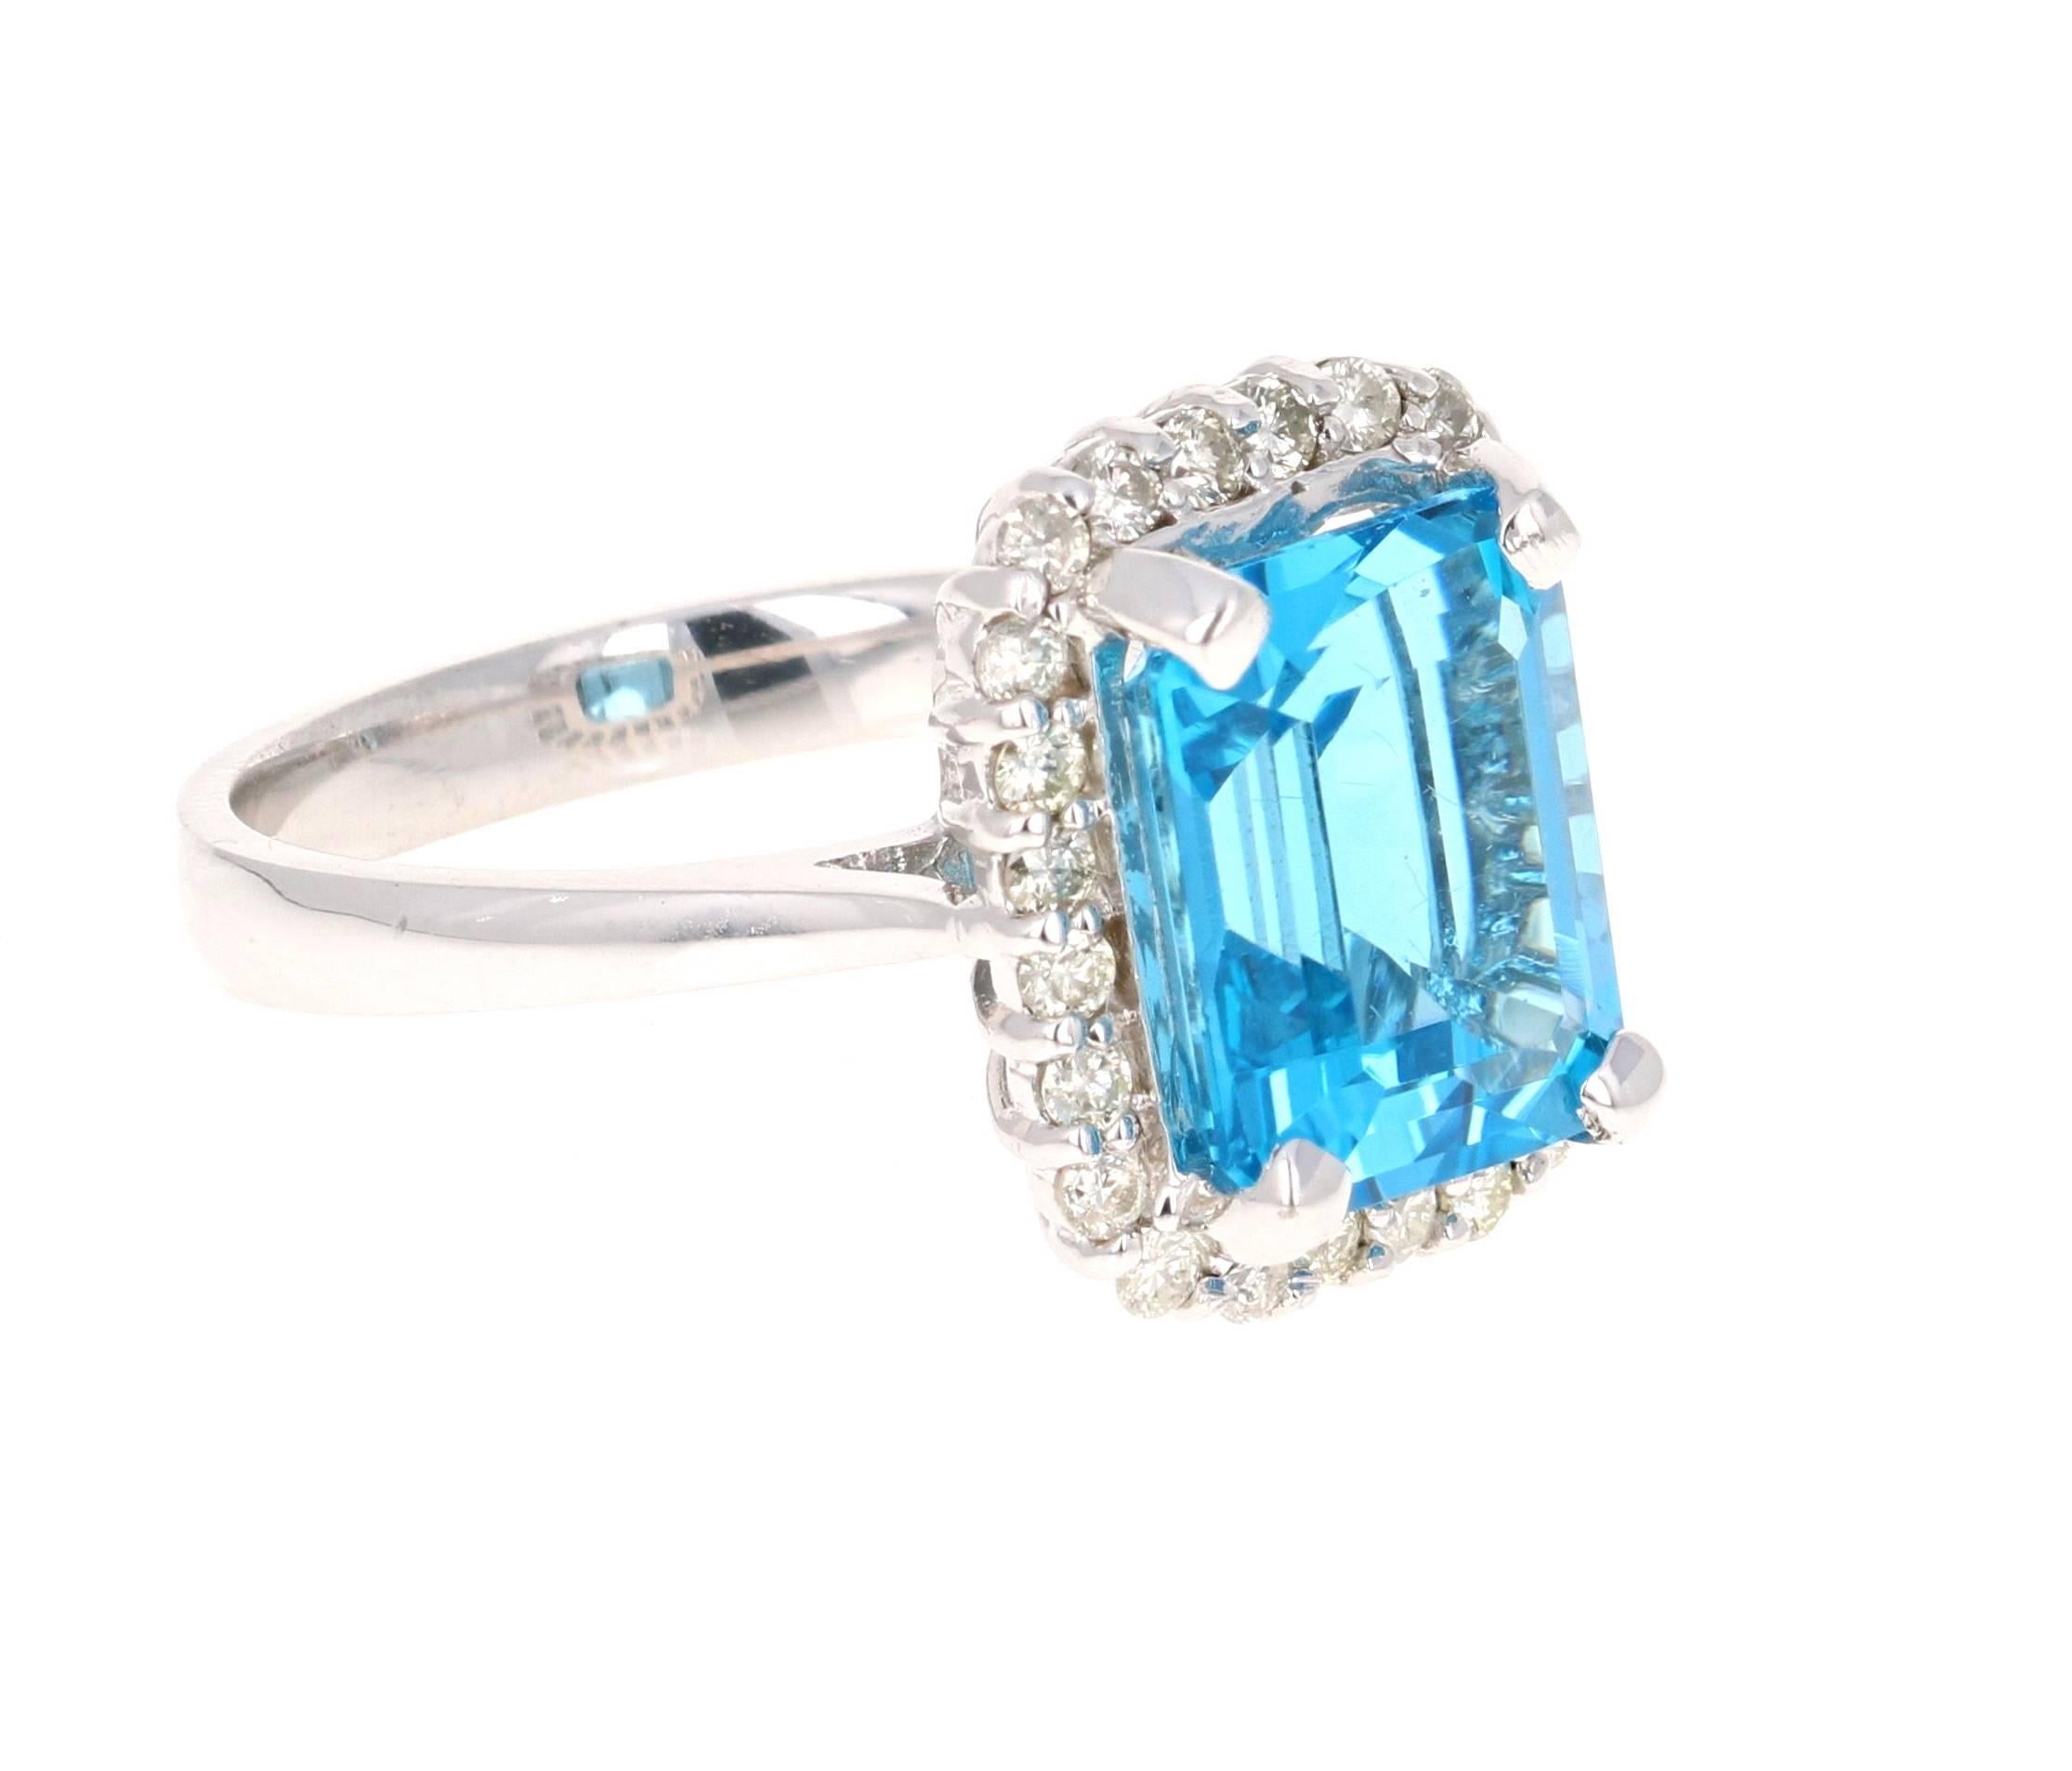 Diese schöne Emerald Cut Blue Topaz und Diamant-Ring hat eine atemberaubende 5,78 Karat Blue Topaz und seine von 24 Round Cut Diamanten, die 0,44 Karat wiegen umgeben. Das Gesamtkaratgewicht des Rings beträgt 6,22 Karat. Die Fassung ist aus 14 Karat